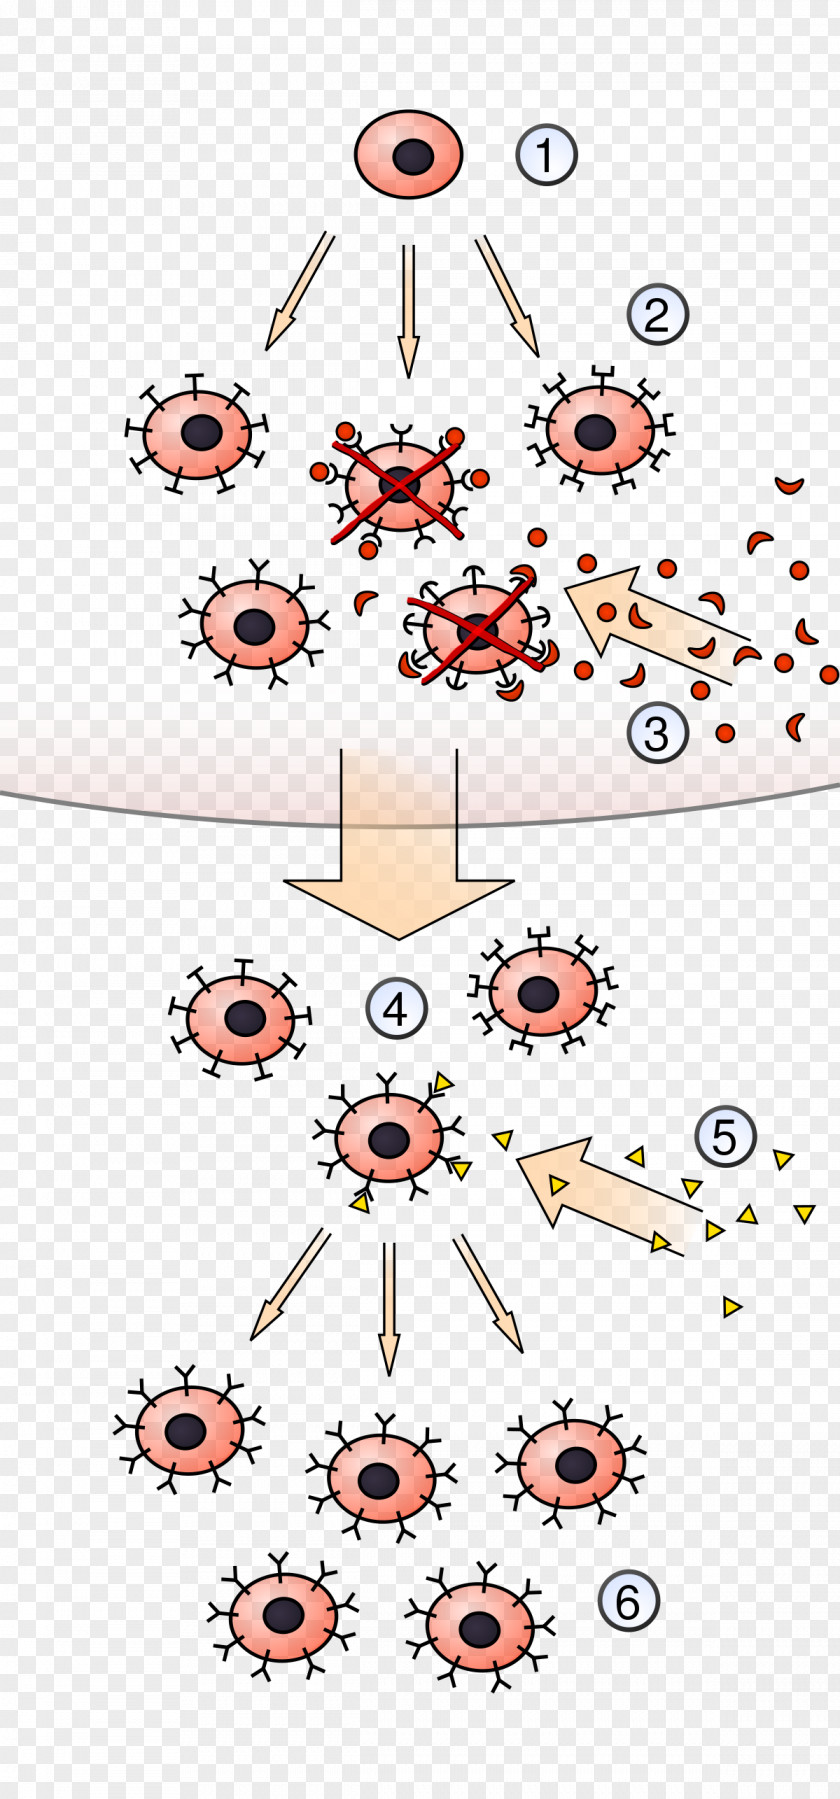 Hematopoietic Stem Cells Clonal Selection Algorithm Lymphocyte Antigen Immune System PNG